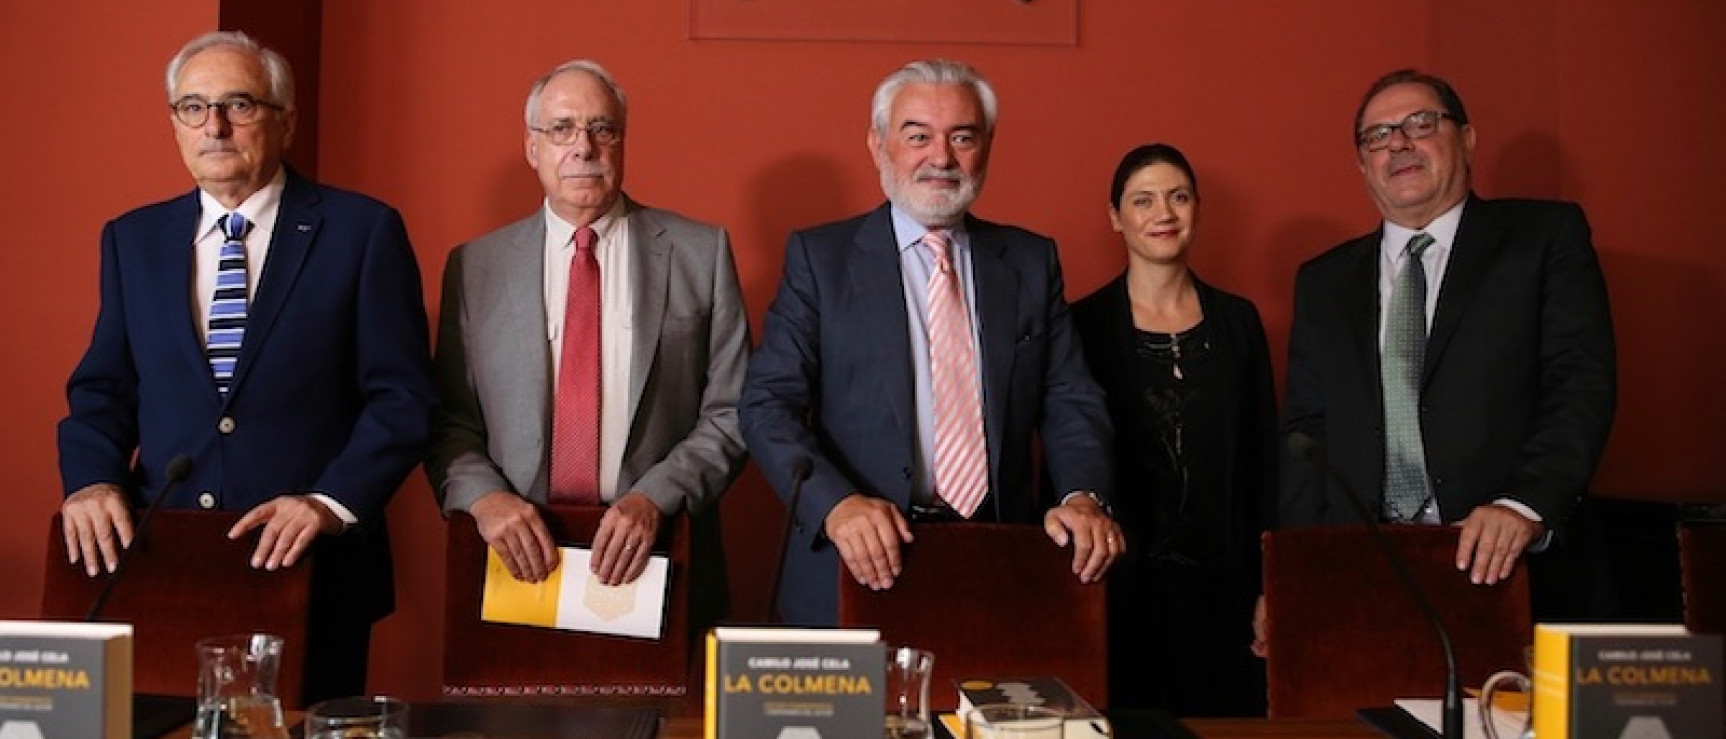 Acto de presentación de «La colmena». De izquierda a derecha: Jorge Urrutia, Camilo Cela Conde, Darío Villanueva, Pilar Reyes y Adolfo Sotelo.